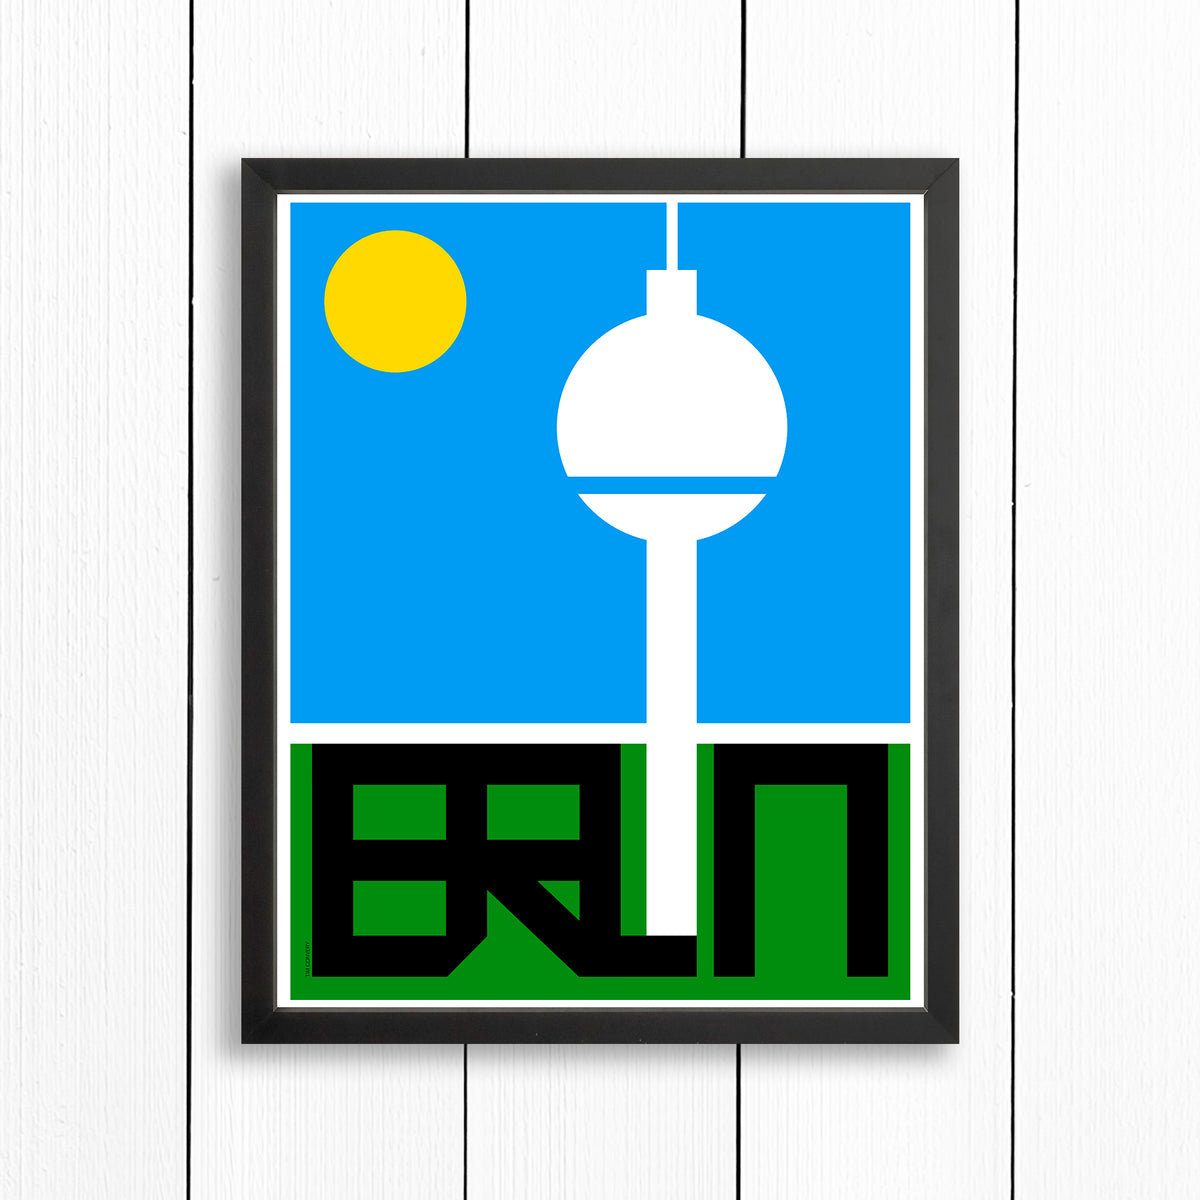 BERLIN / PRINT